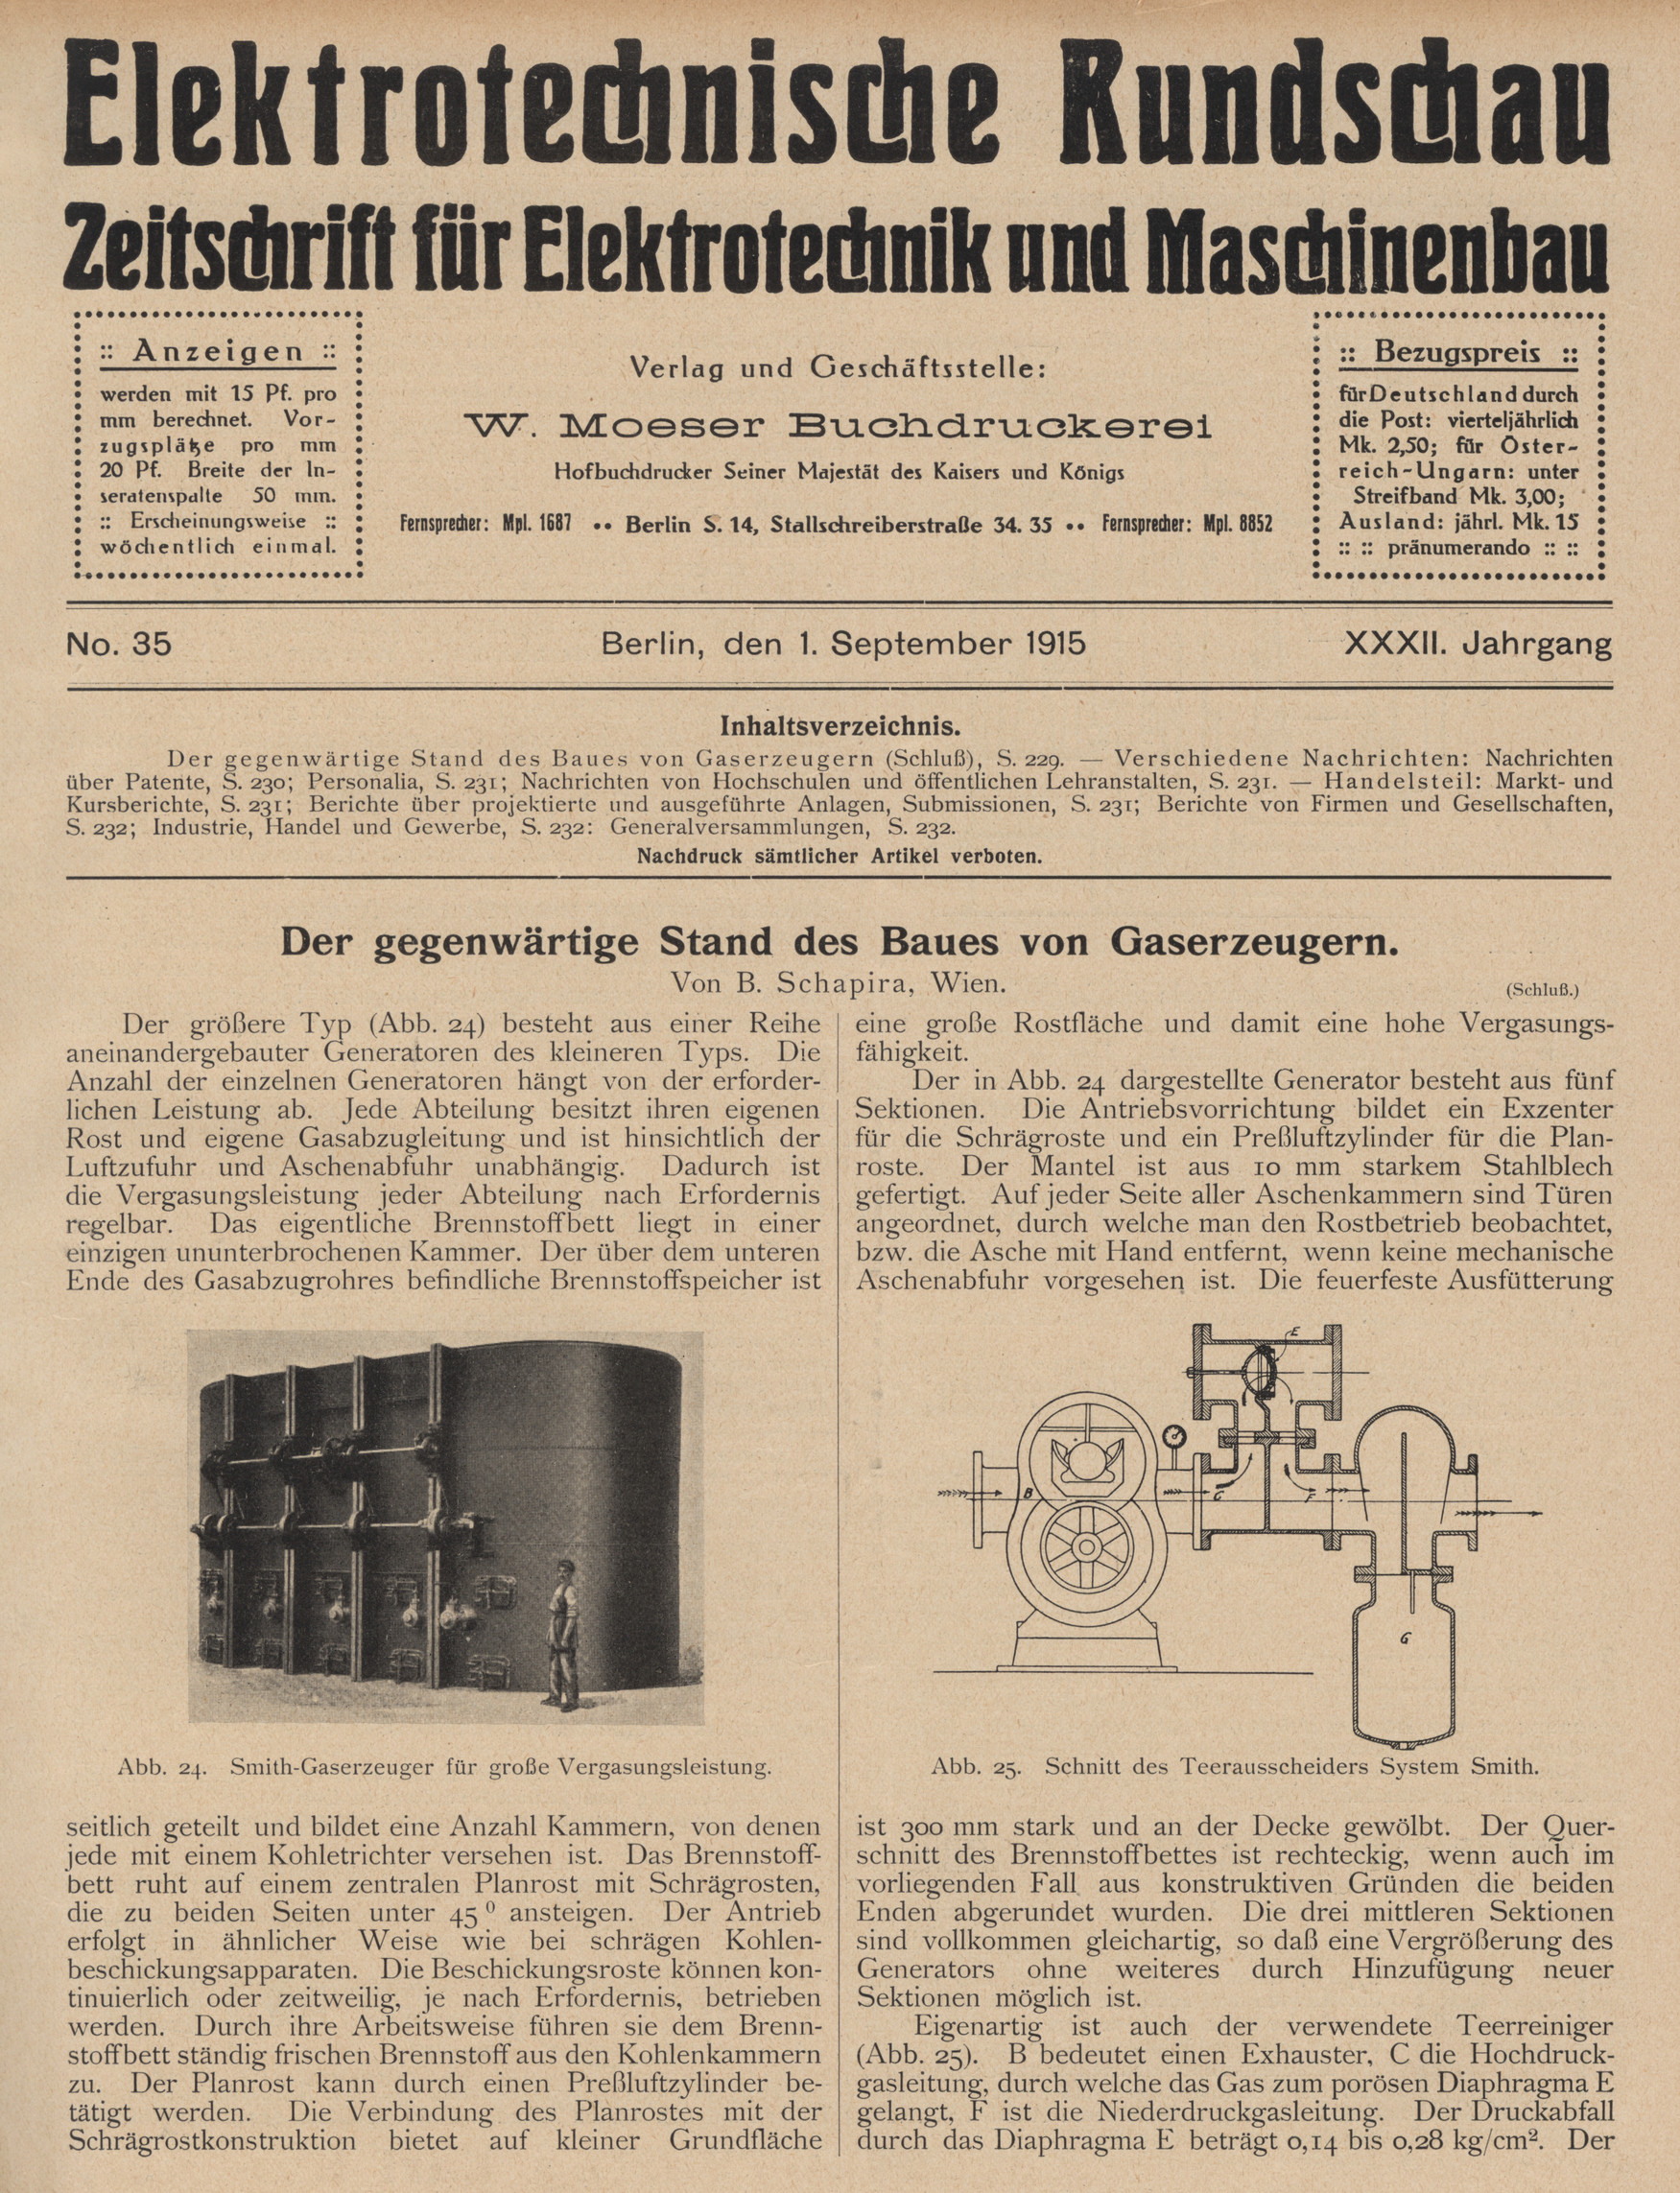 Elektrotechnische Rundschau : Zeitschrift für Elektrotechnik und Maschinenbau + Polytechnische Rundschau, No. 35, XXXII. Jahrgang